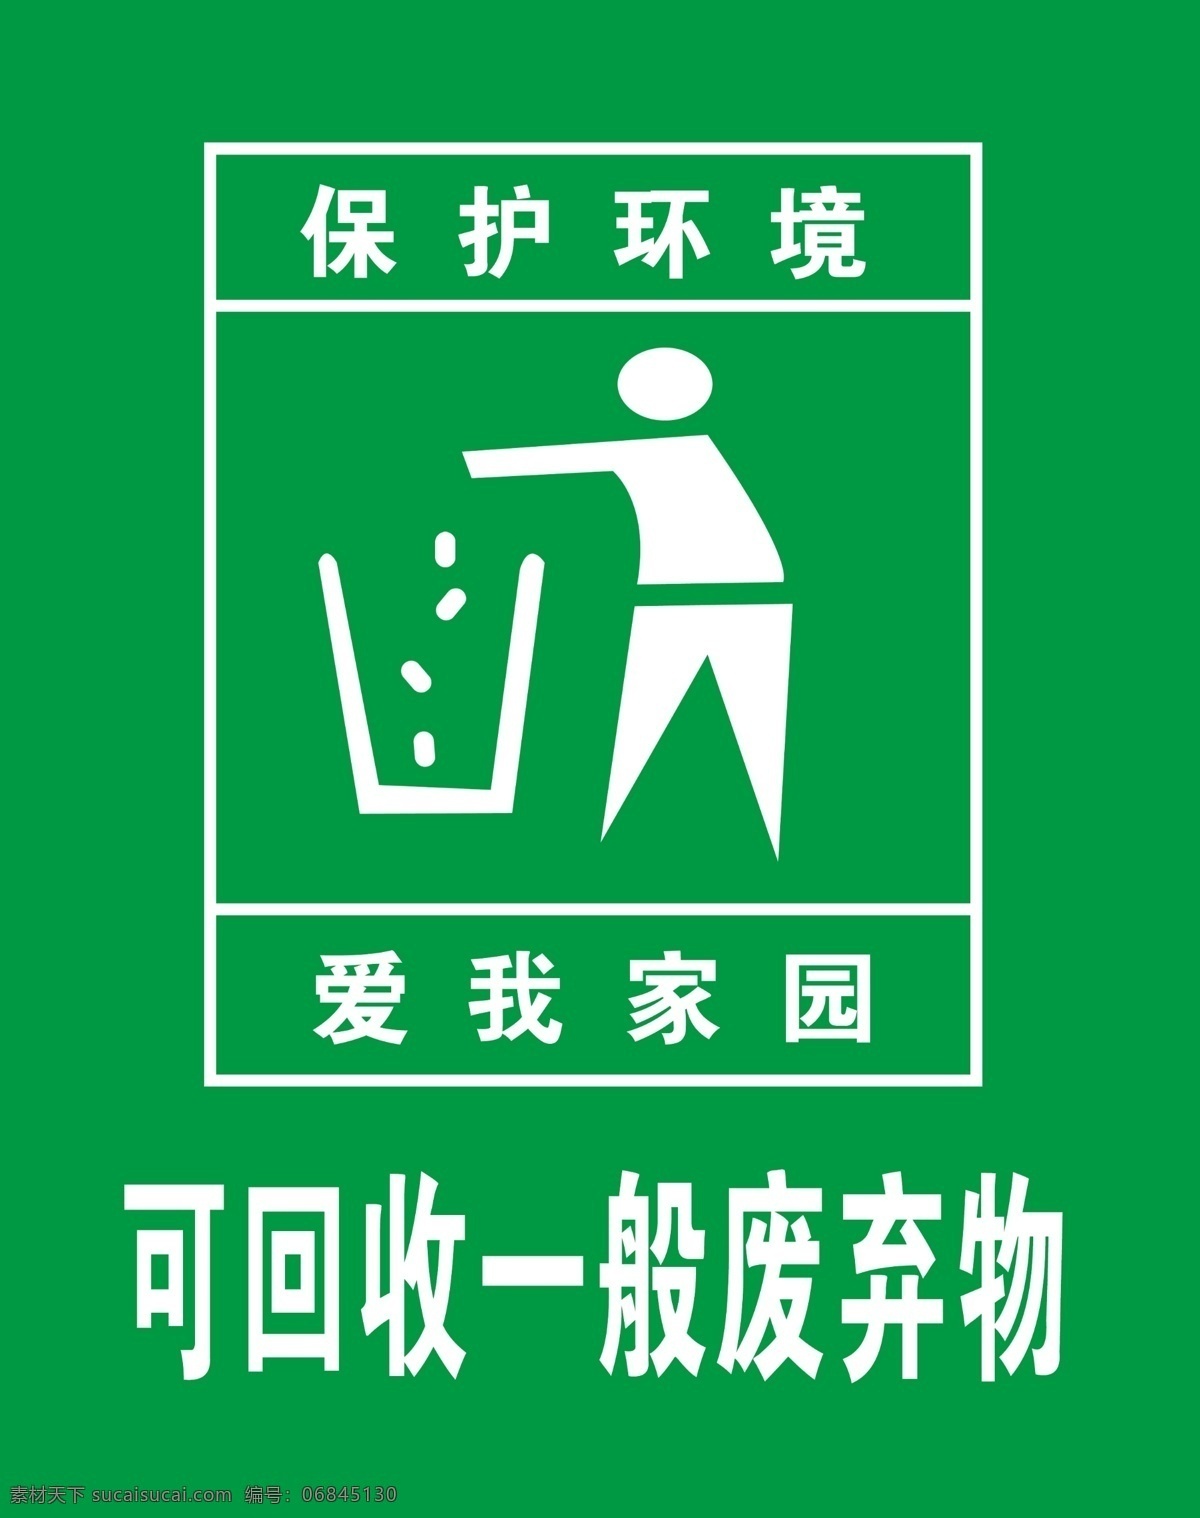 保护 环境 保护环境 垃圾箱标志 爱我家园 psd源文件